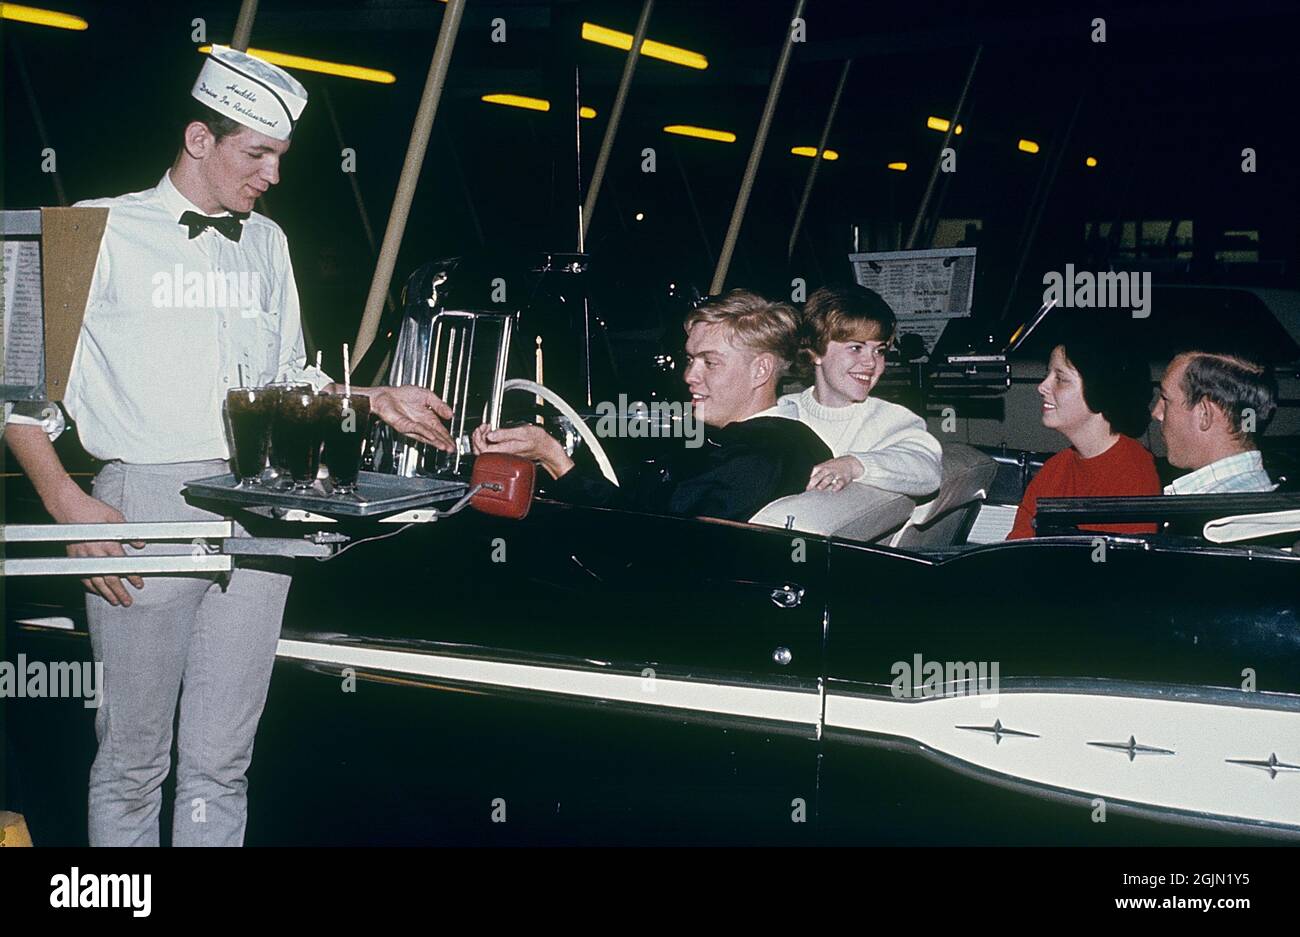 USA in den 1960er Jahren. Zwei junge Paare in einem Cabrio in einem Huddle Drive-in-Restaurant 1964. Ein Kellner erhält die Bezahlung für die alkoholfreien Getränke. Kodachrome Dia Original. Credit Roland Palm Ref. 6-9-17 Stockfoto